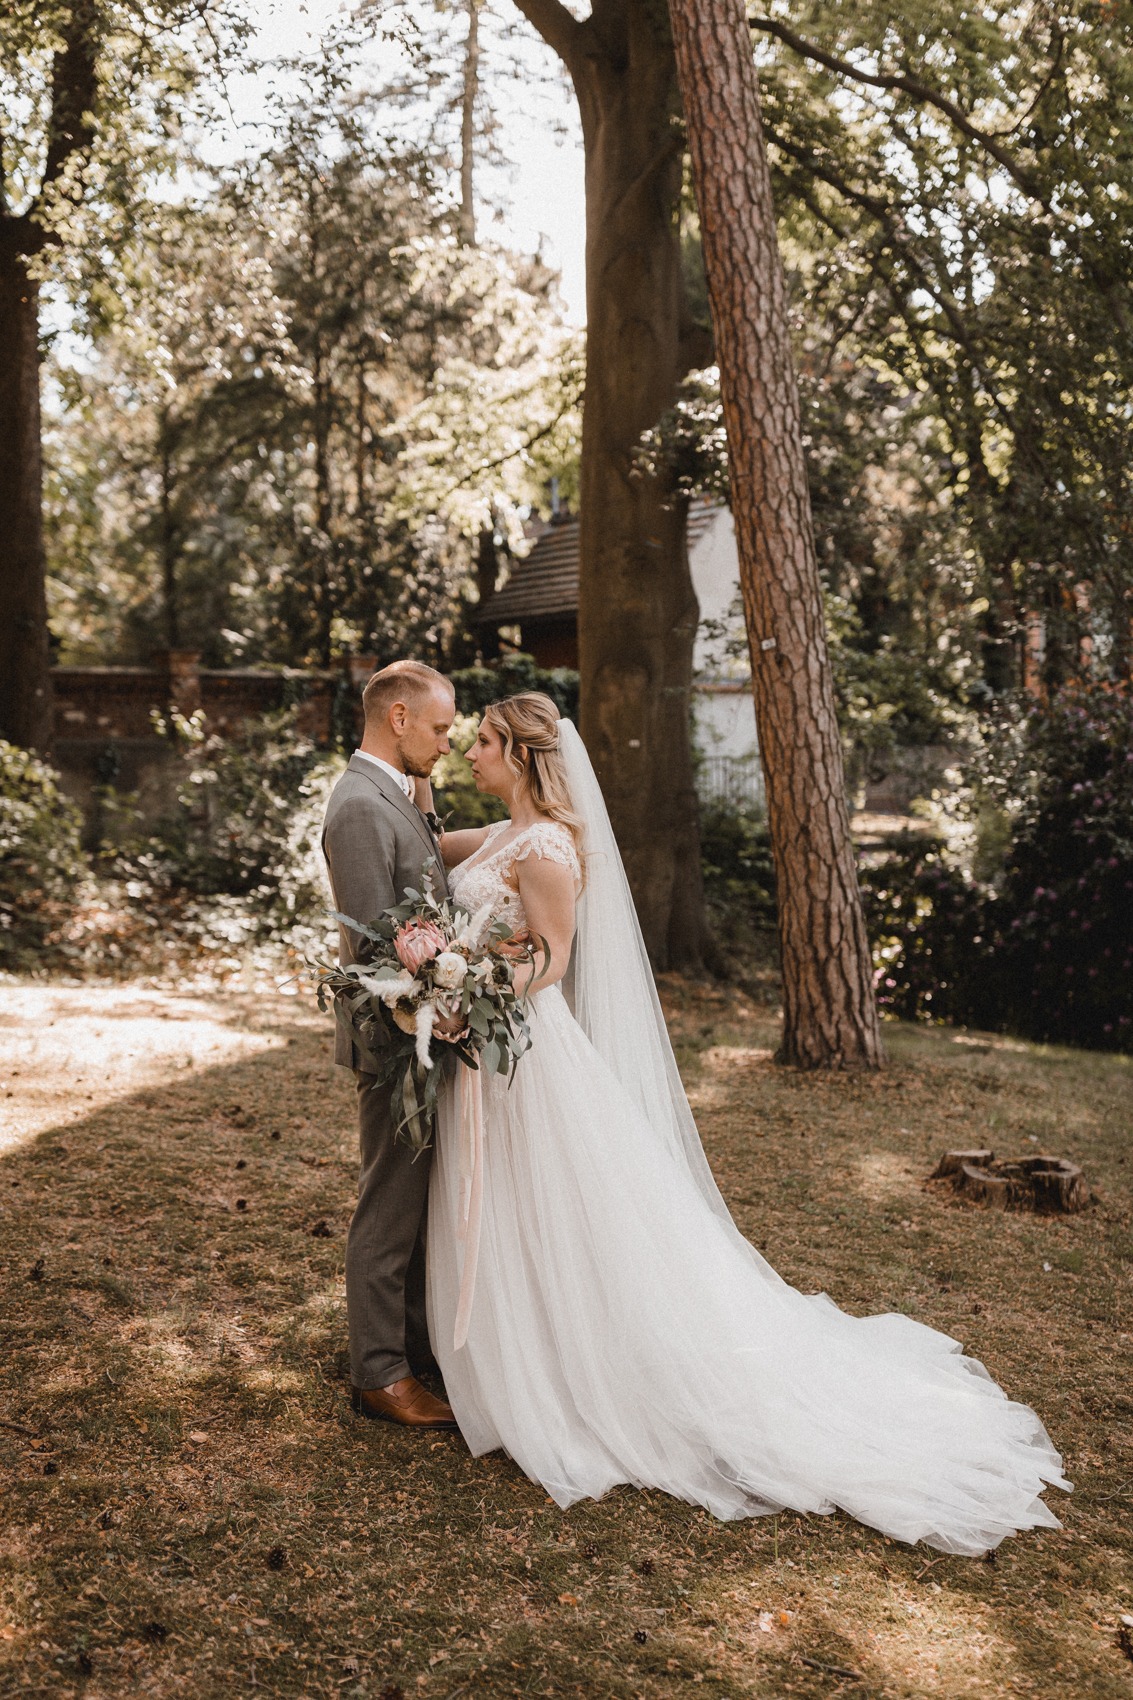 Das verliebte Brautpaar. Der Bräutigam trägt einen graugrünen Zweireiher und die Braut ein Brautkleid in A-Linie mit ausgestelltem Tüllrock und langer Sleppe